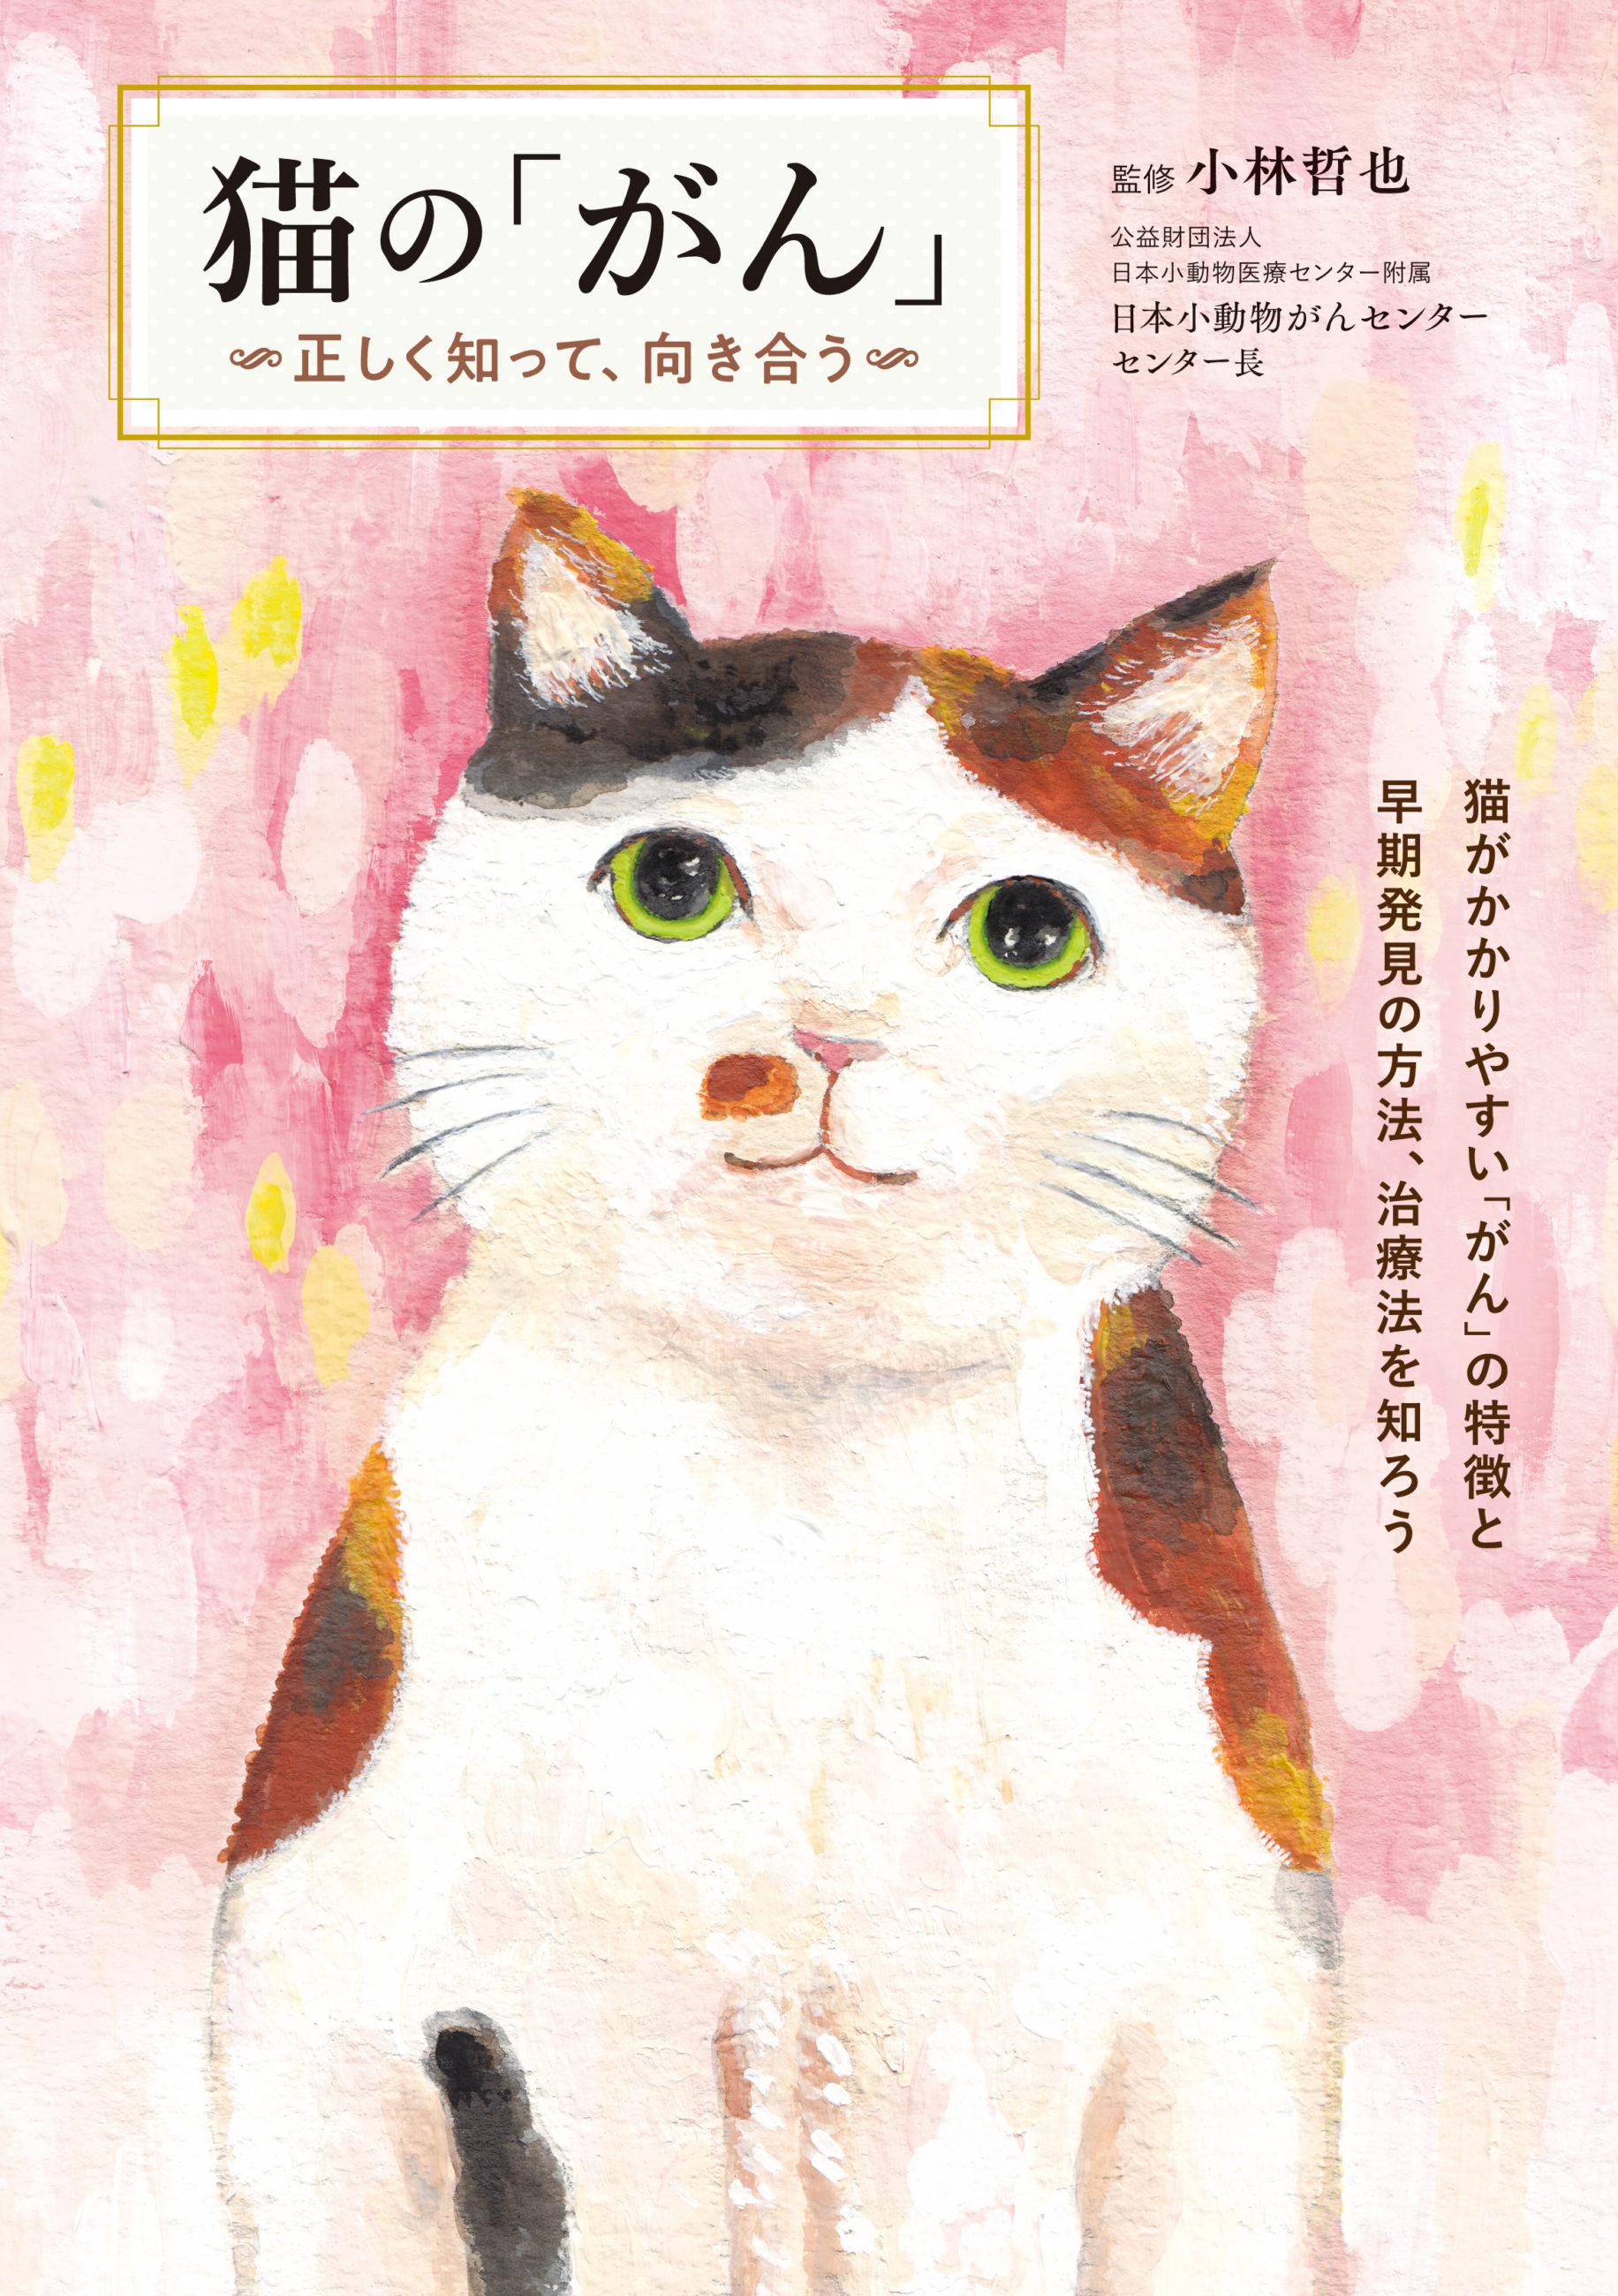 第３弾書籍『猫の「がん」〜正しく知って、向き合う』 » 猫の本